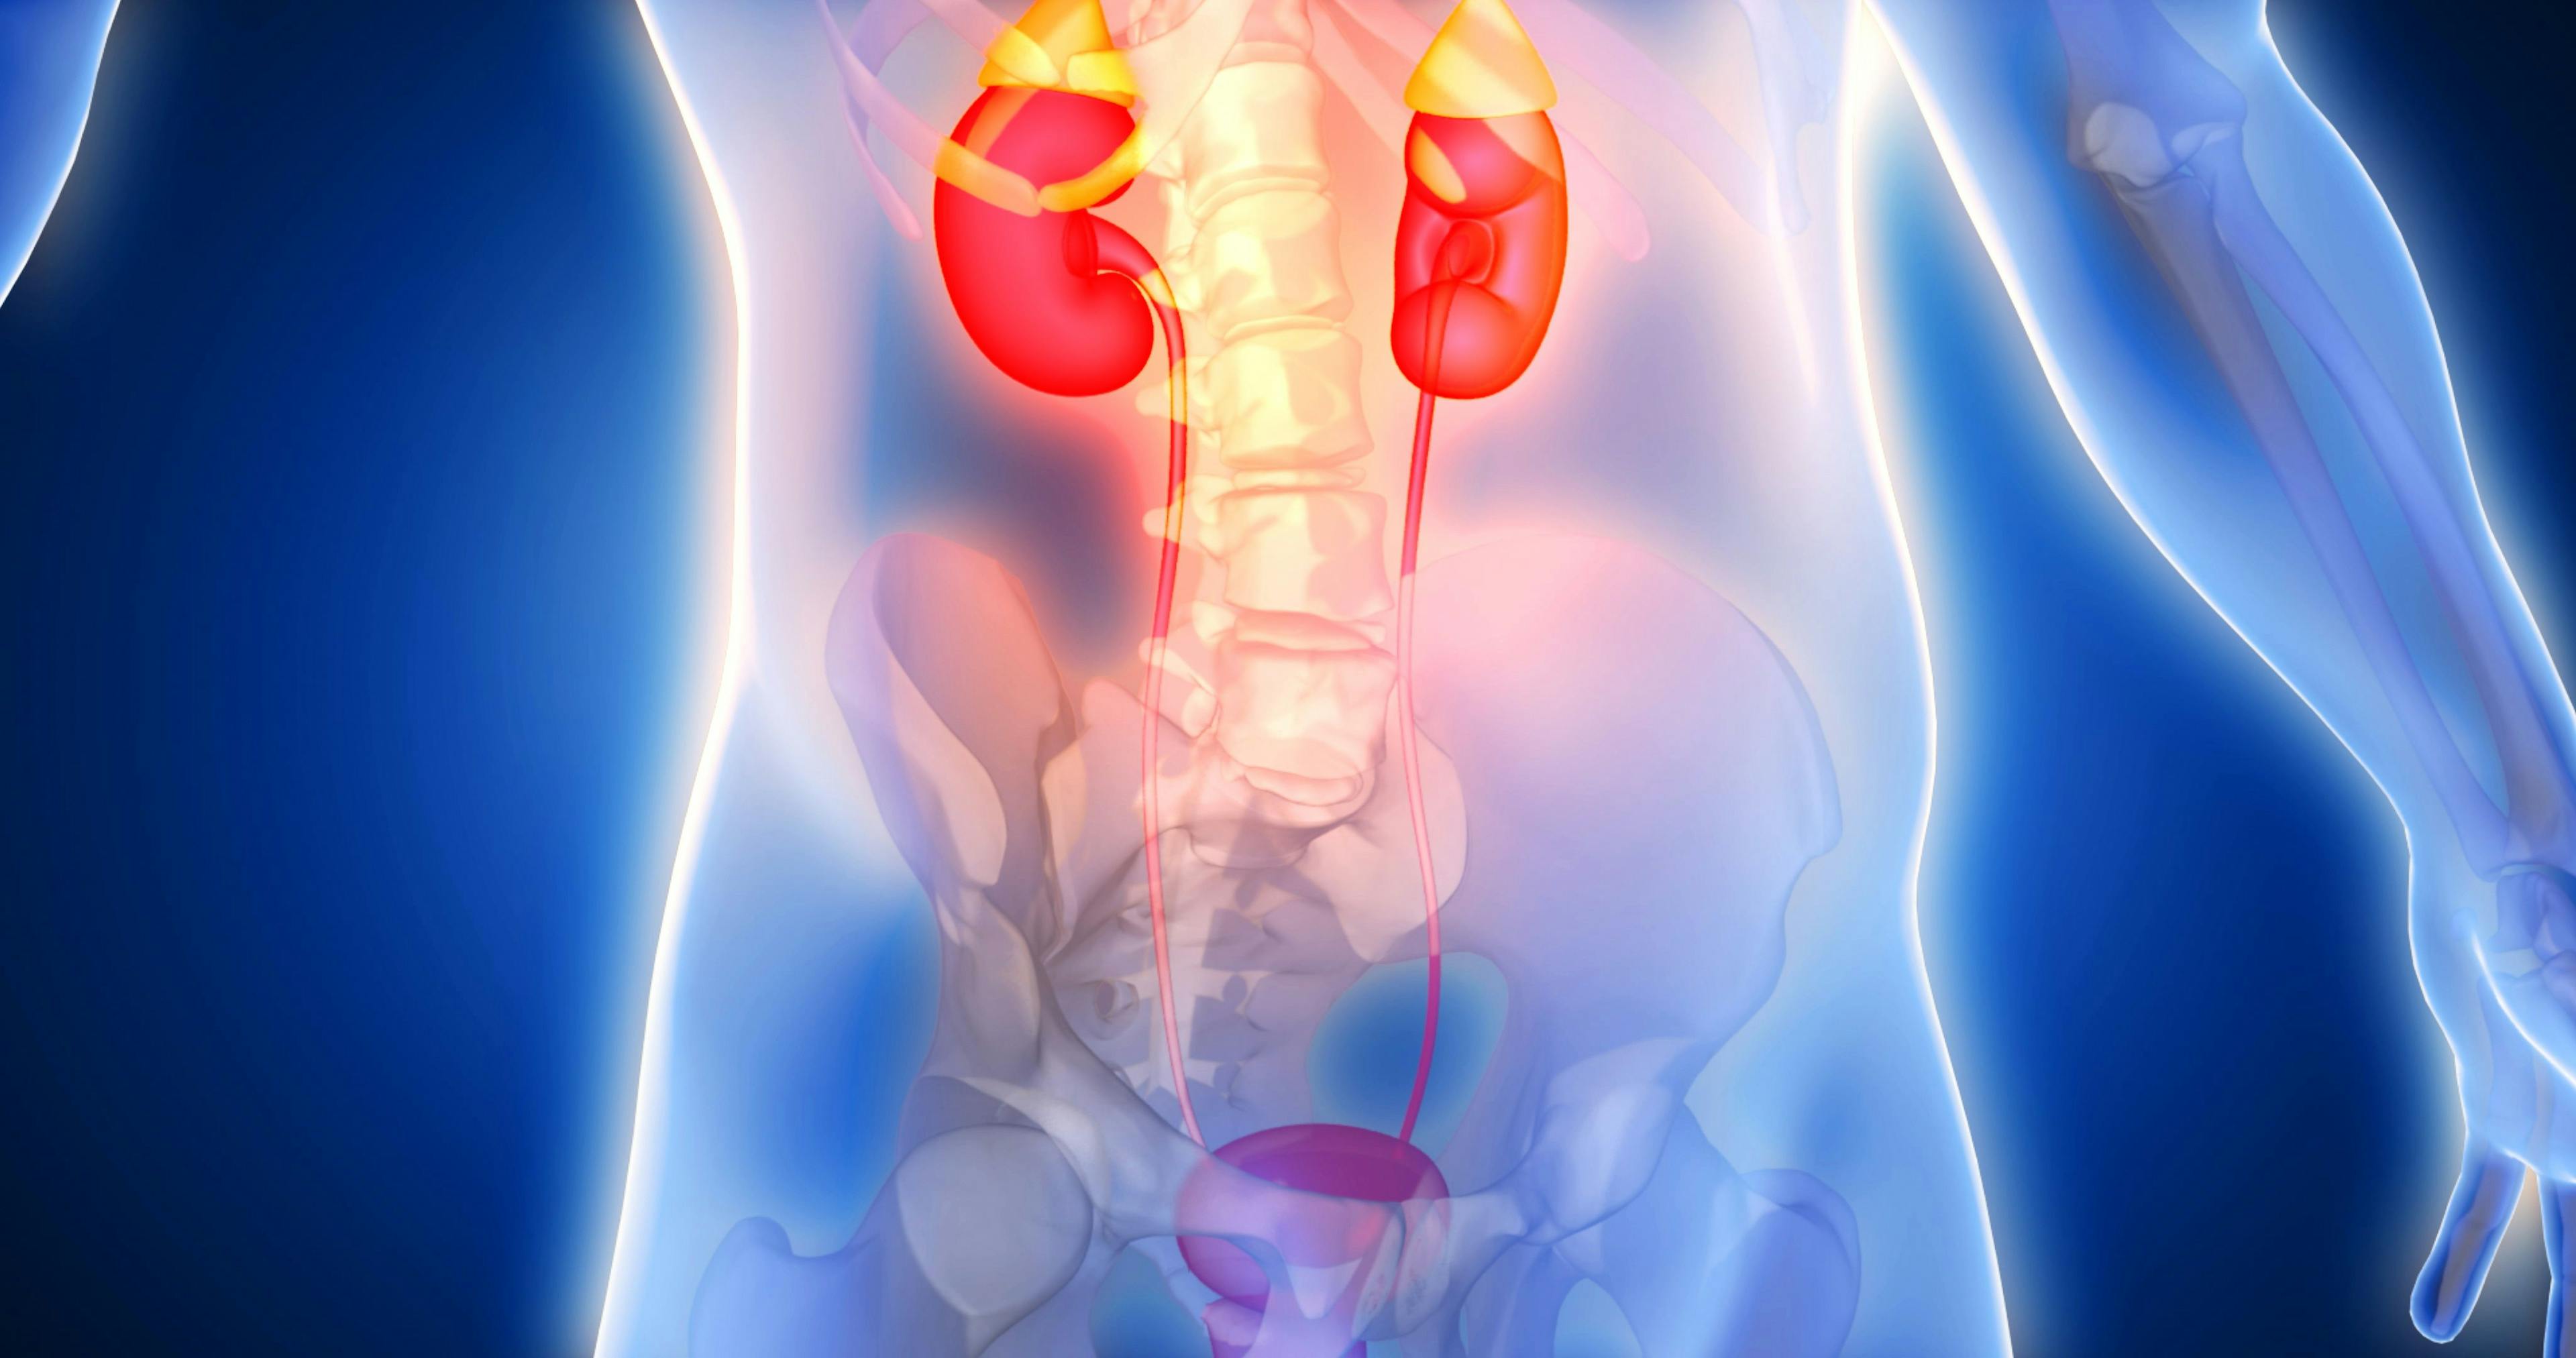 3D rendering of human kidneys